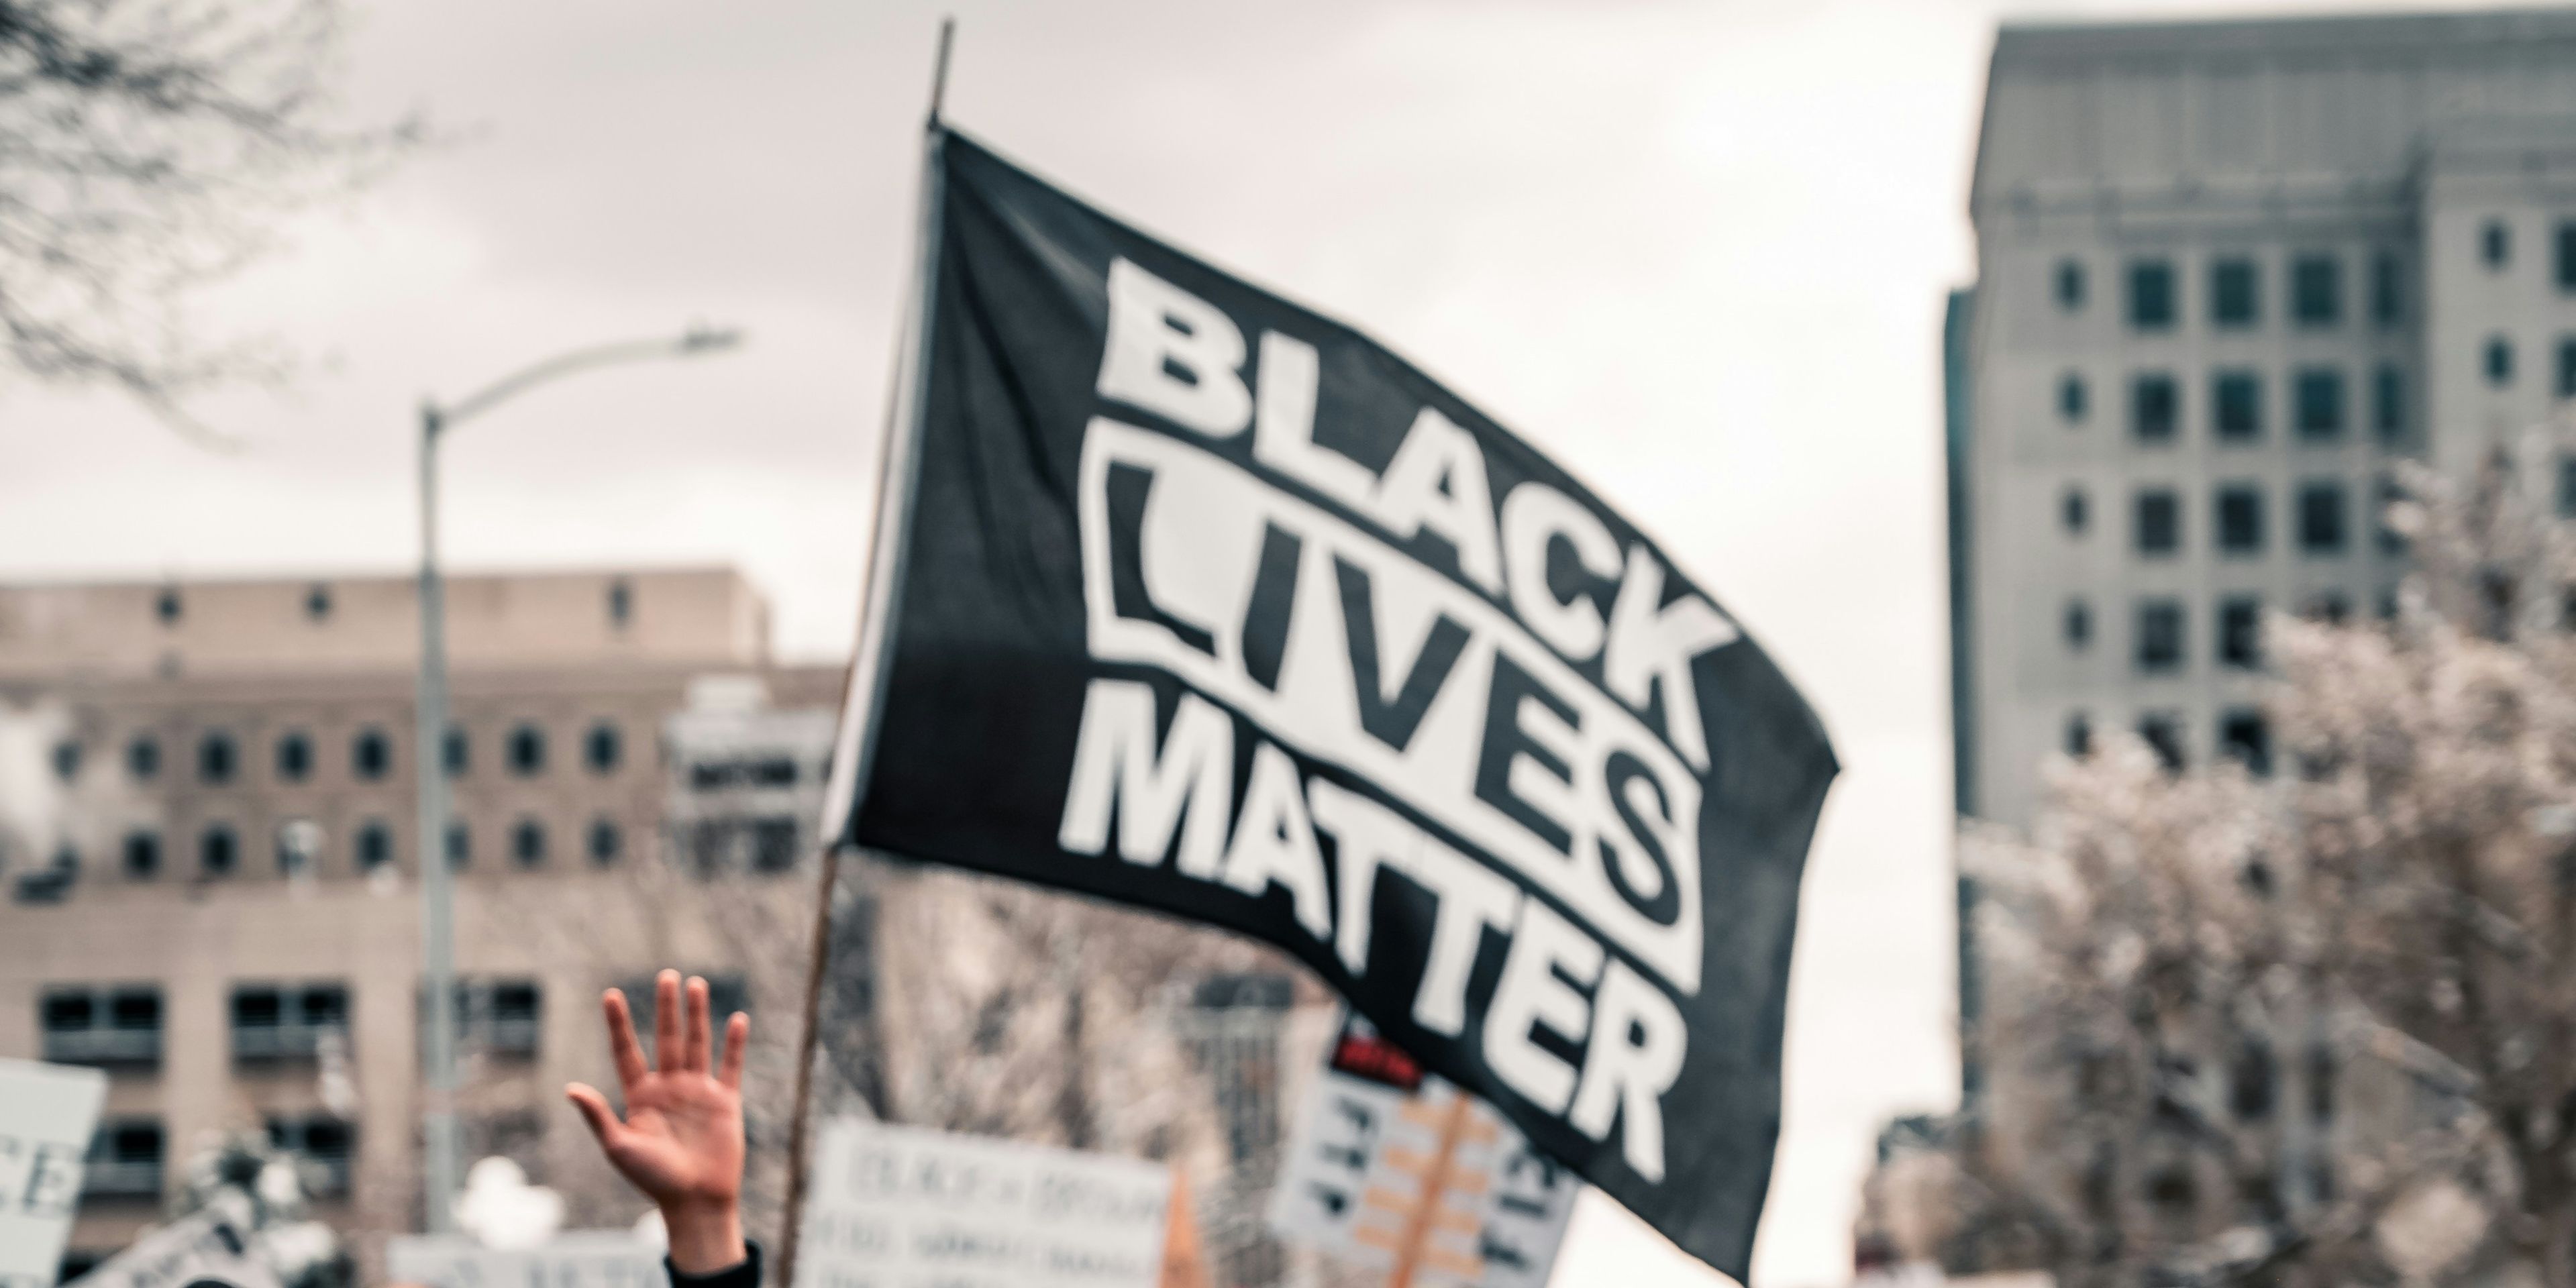 'Black Lives Matter' flag in gathering